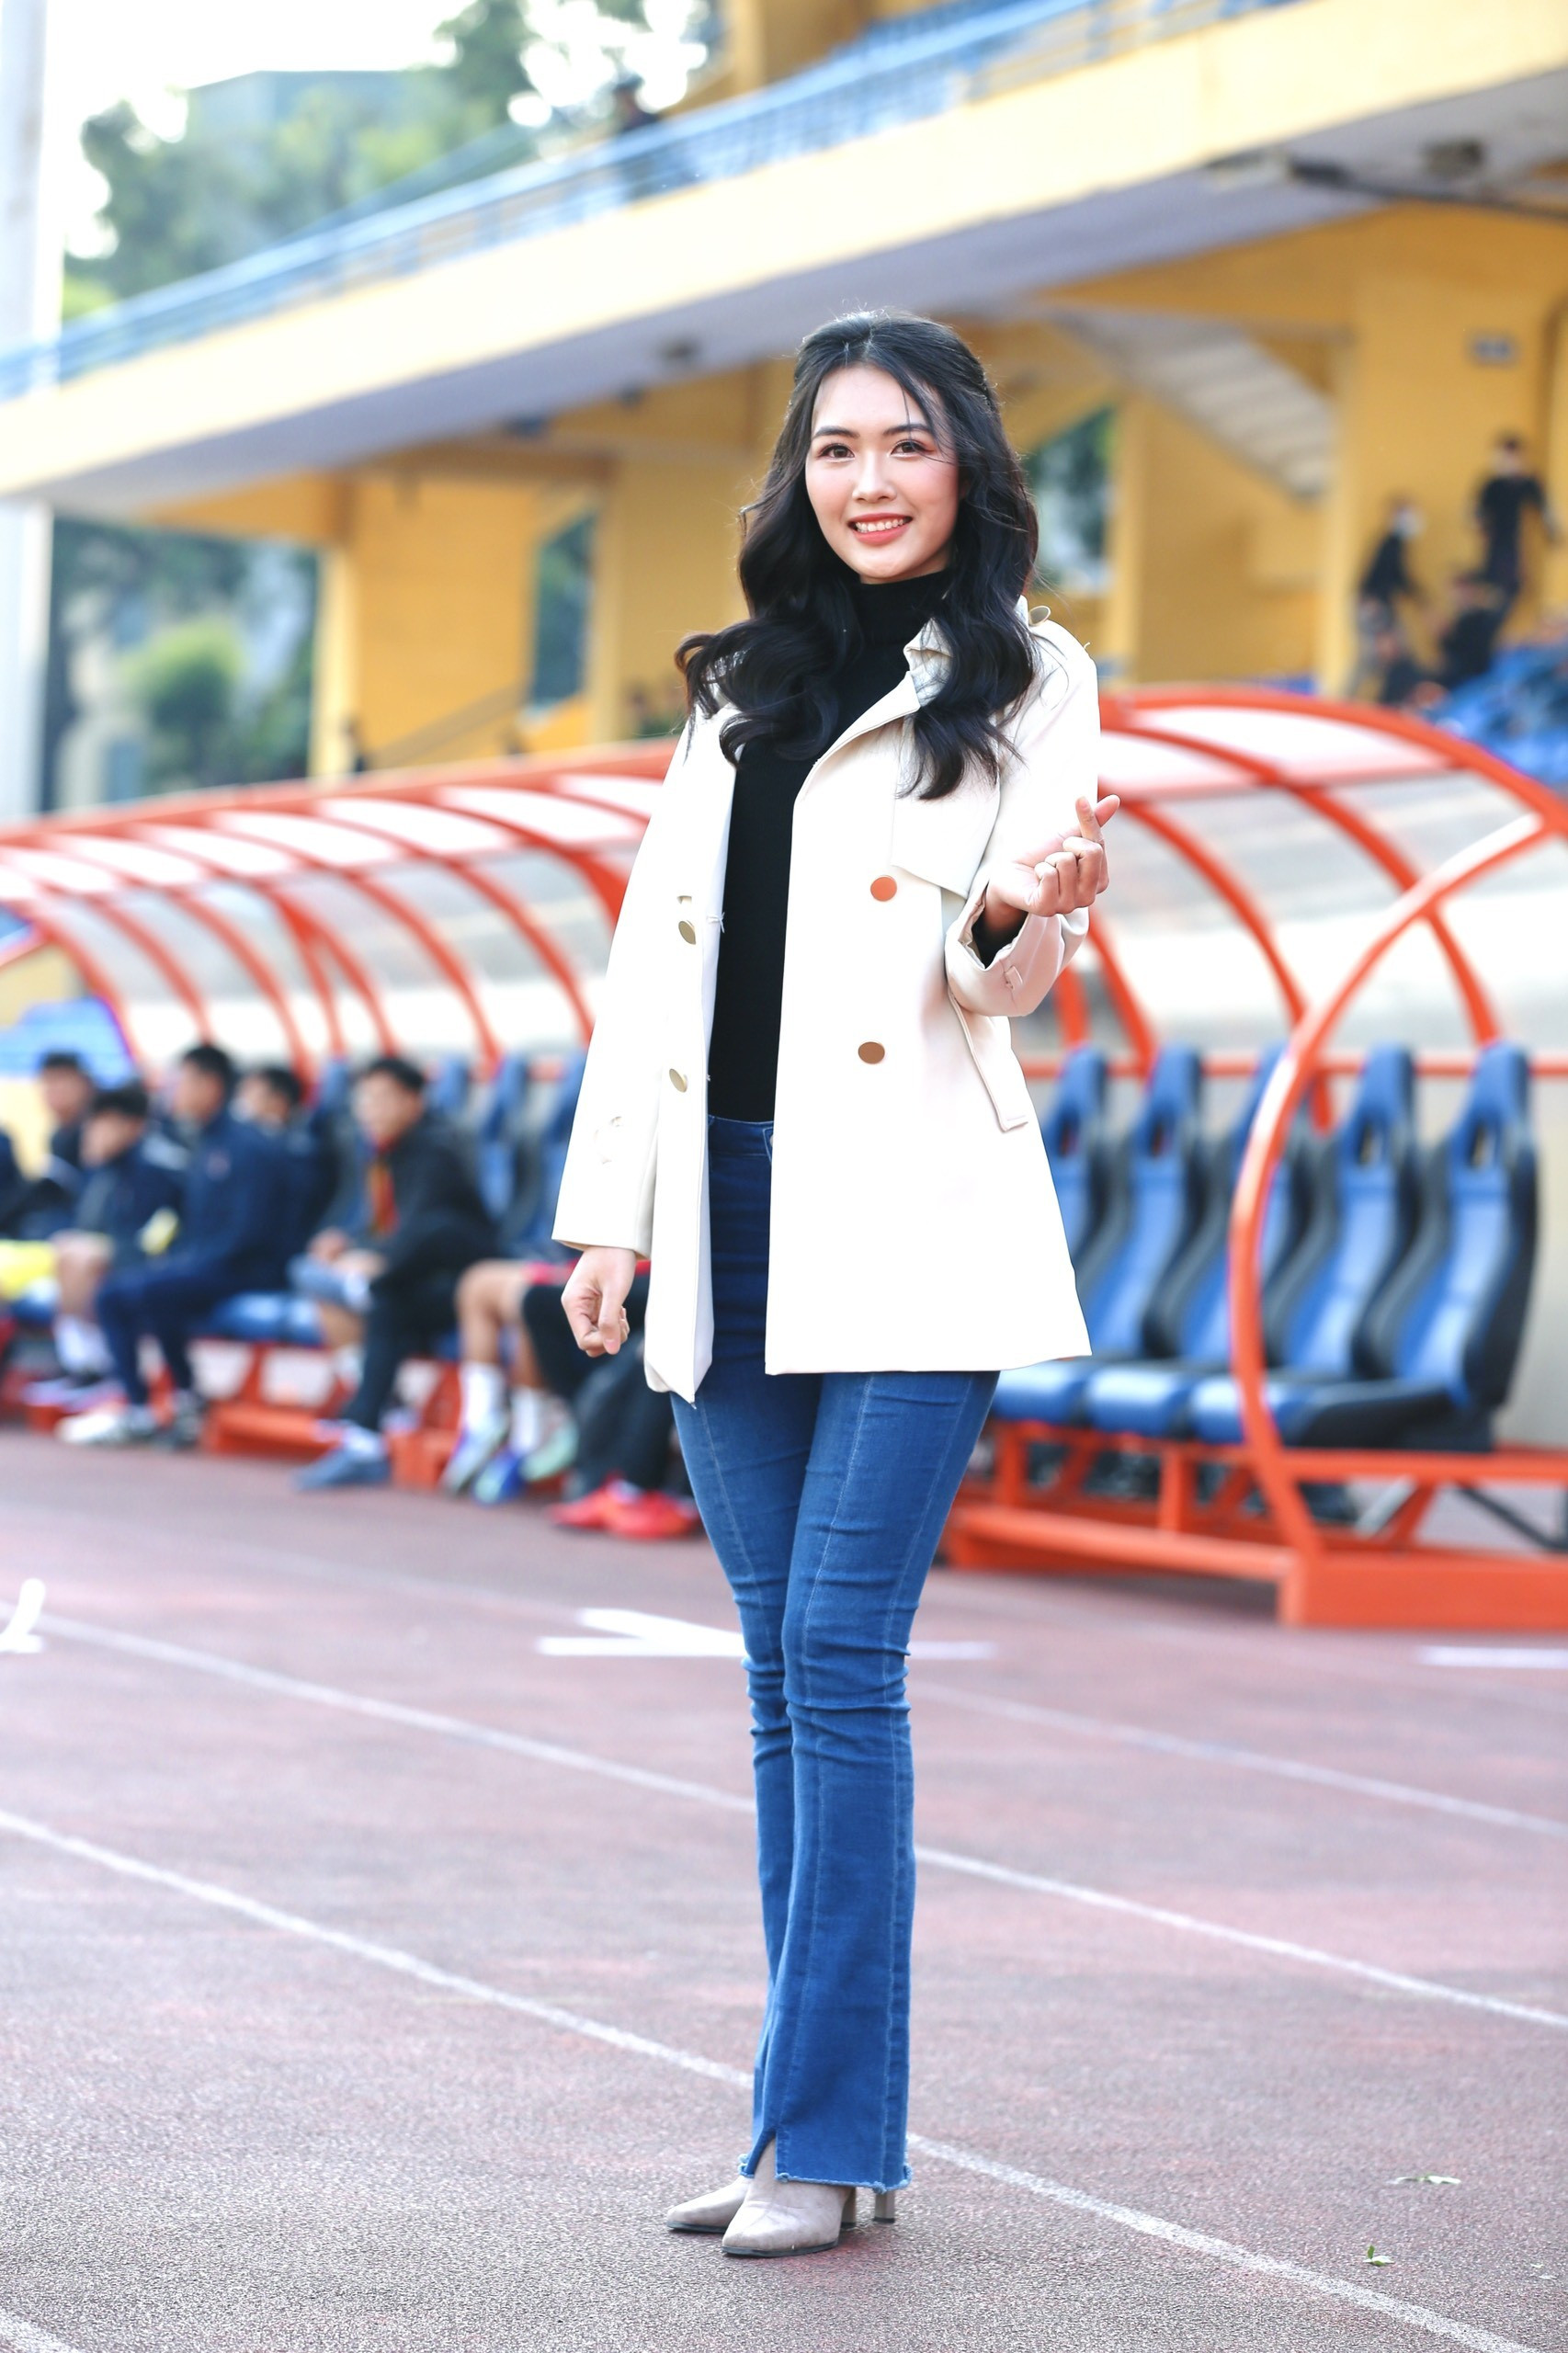 Hoa hậu Đỗ Mỹ Linh đến sân Hàng Đẫy cổ vũ đội bóng của ông xã tranh Siêu cúp ảnh 13